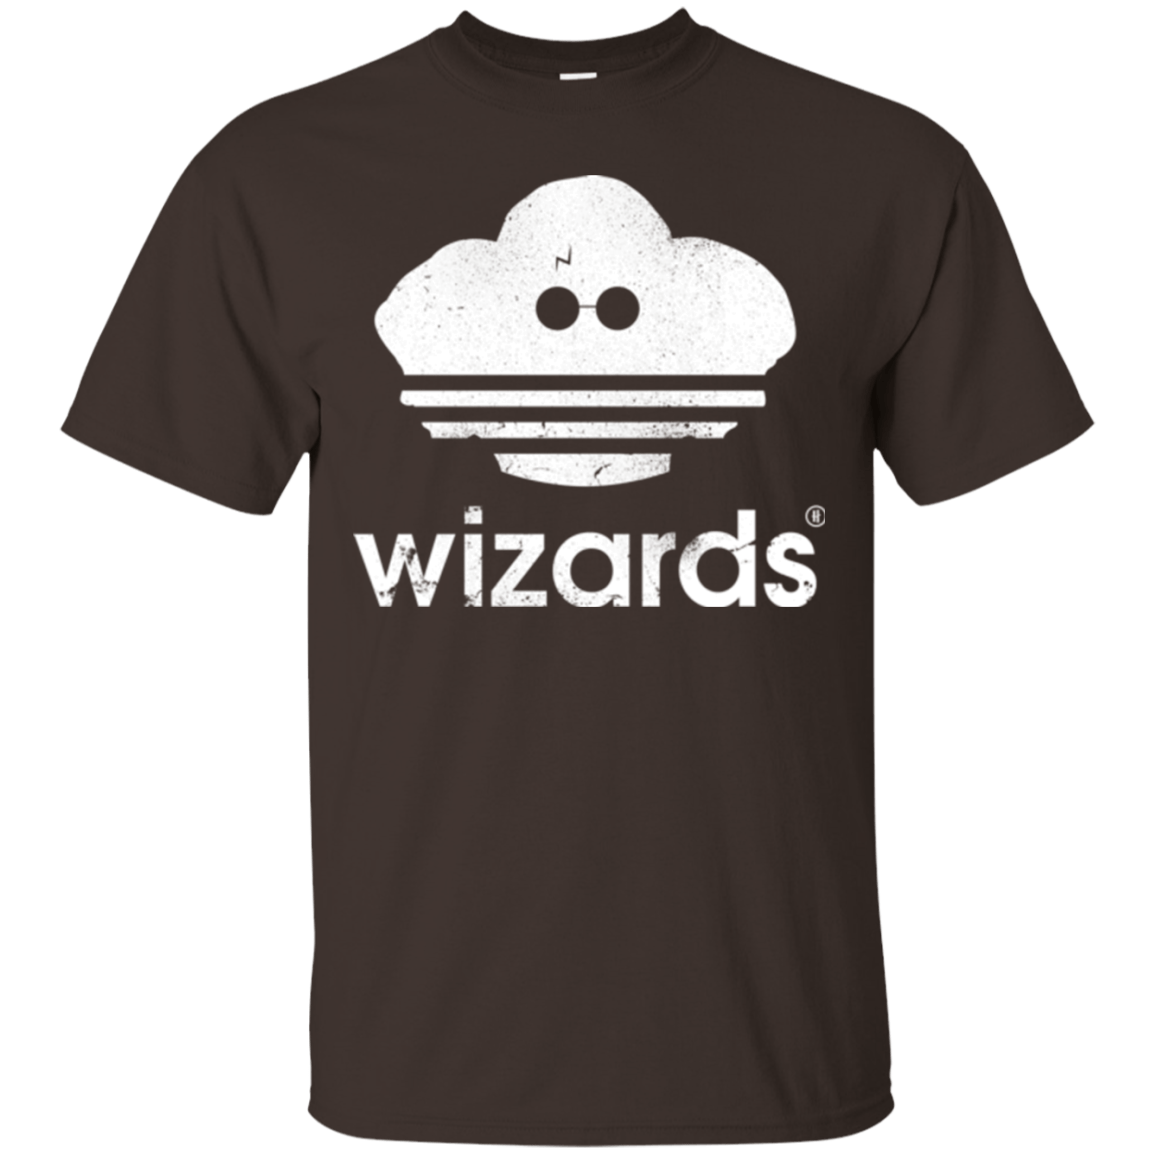 T-Shirts Dark Chocolate / Small Wizards T-Shirt